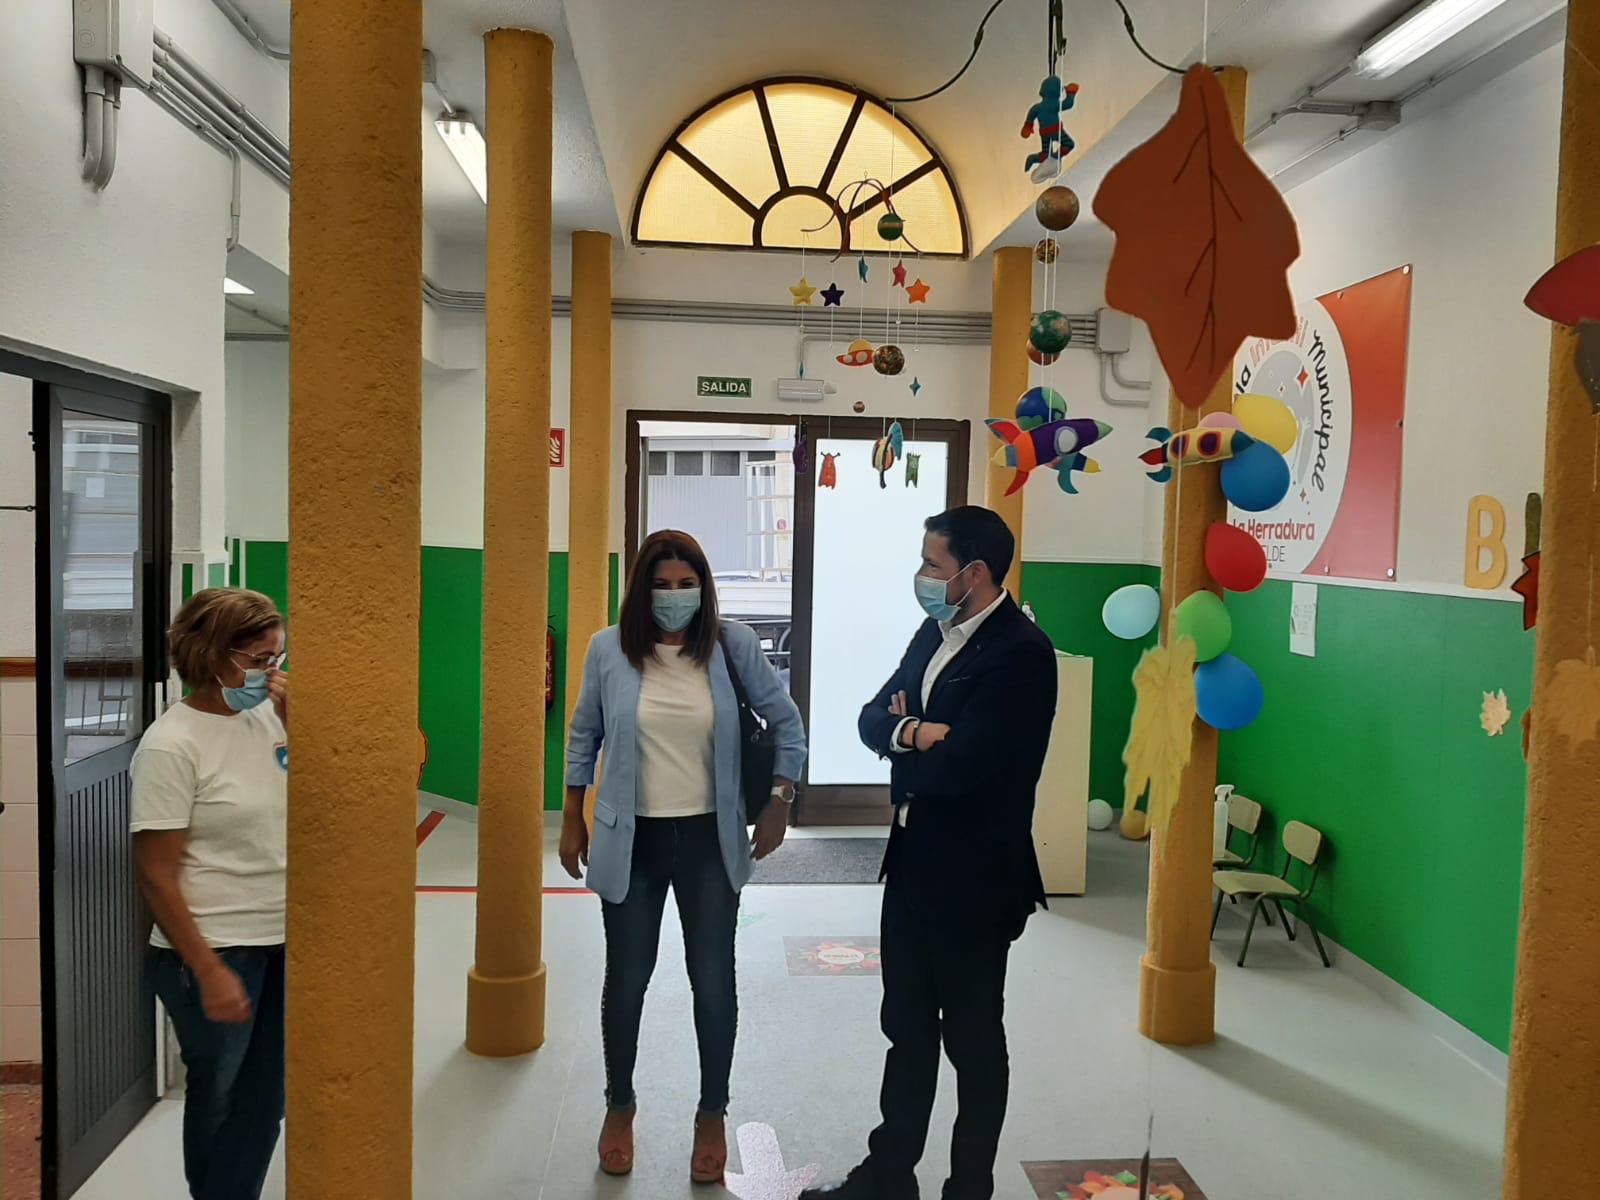 Héctor Suárez y Carmen Hernández, visitan la Escuela Infantil de La Herradura, Telde. Gran Canaria